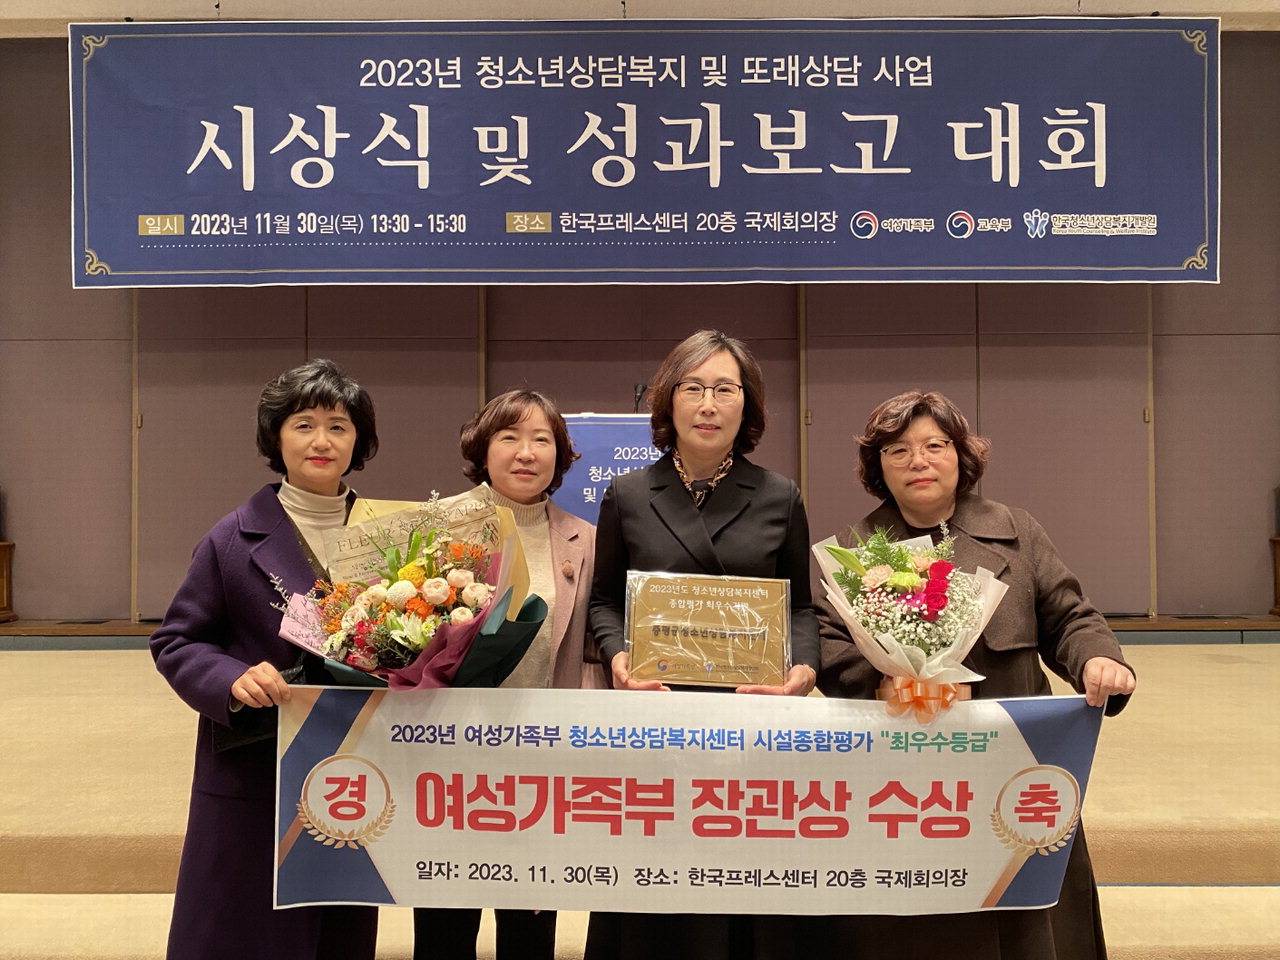 증평군청소년상담복지센터가 30일 한국 프레스센터에서 개최된 '2023년 청소년 상담복지사업 운영 성과 보고대회'에서 여성가족부 장관상을 수상했다.